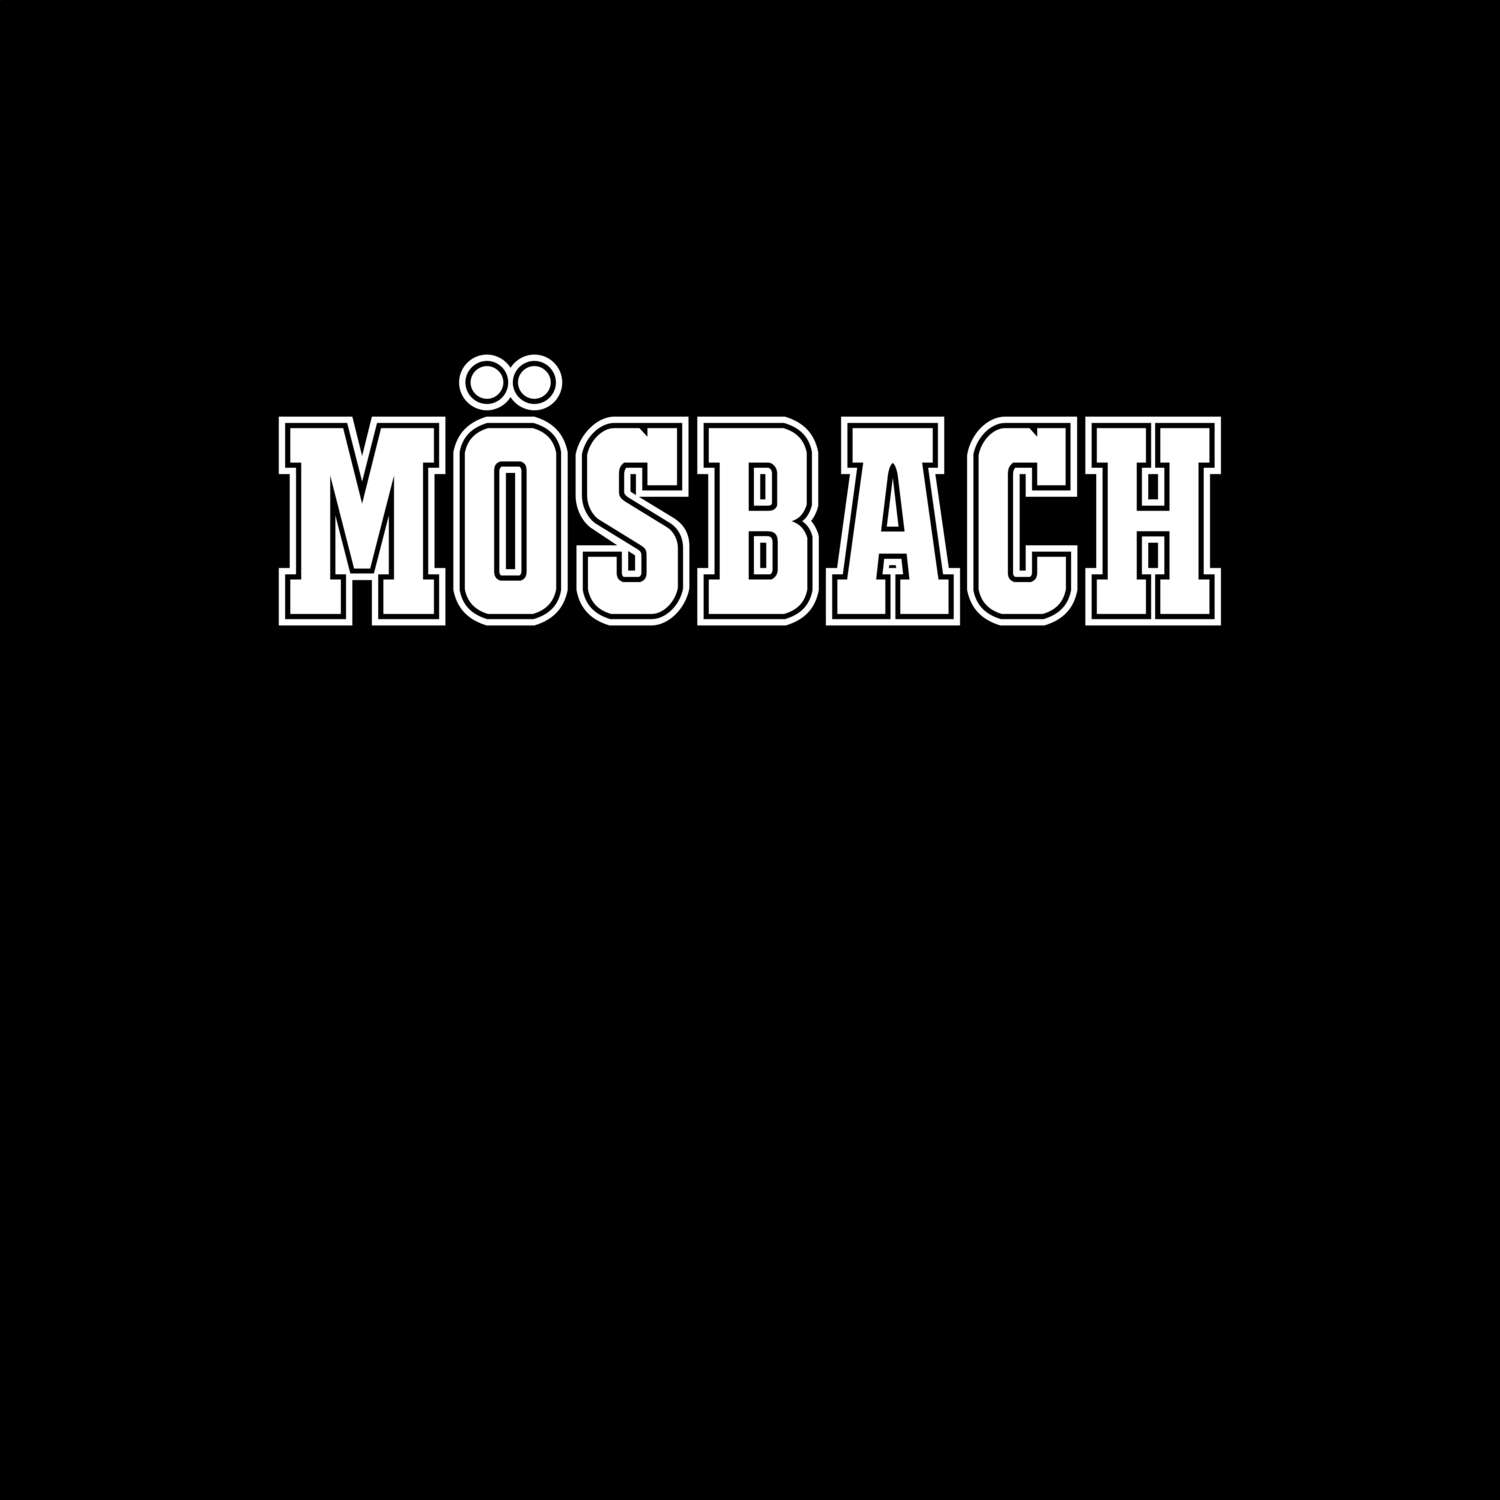 Mösbach T-Shirt »Classic«